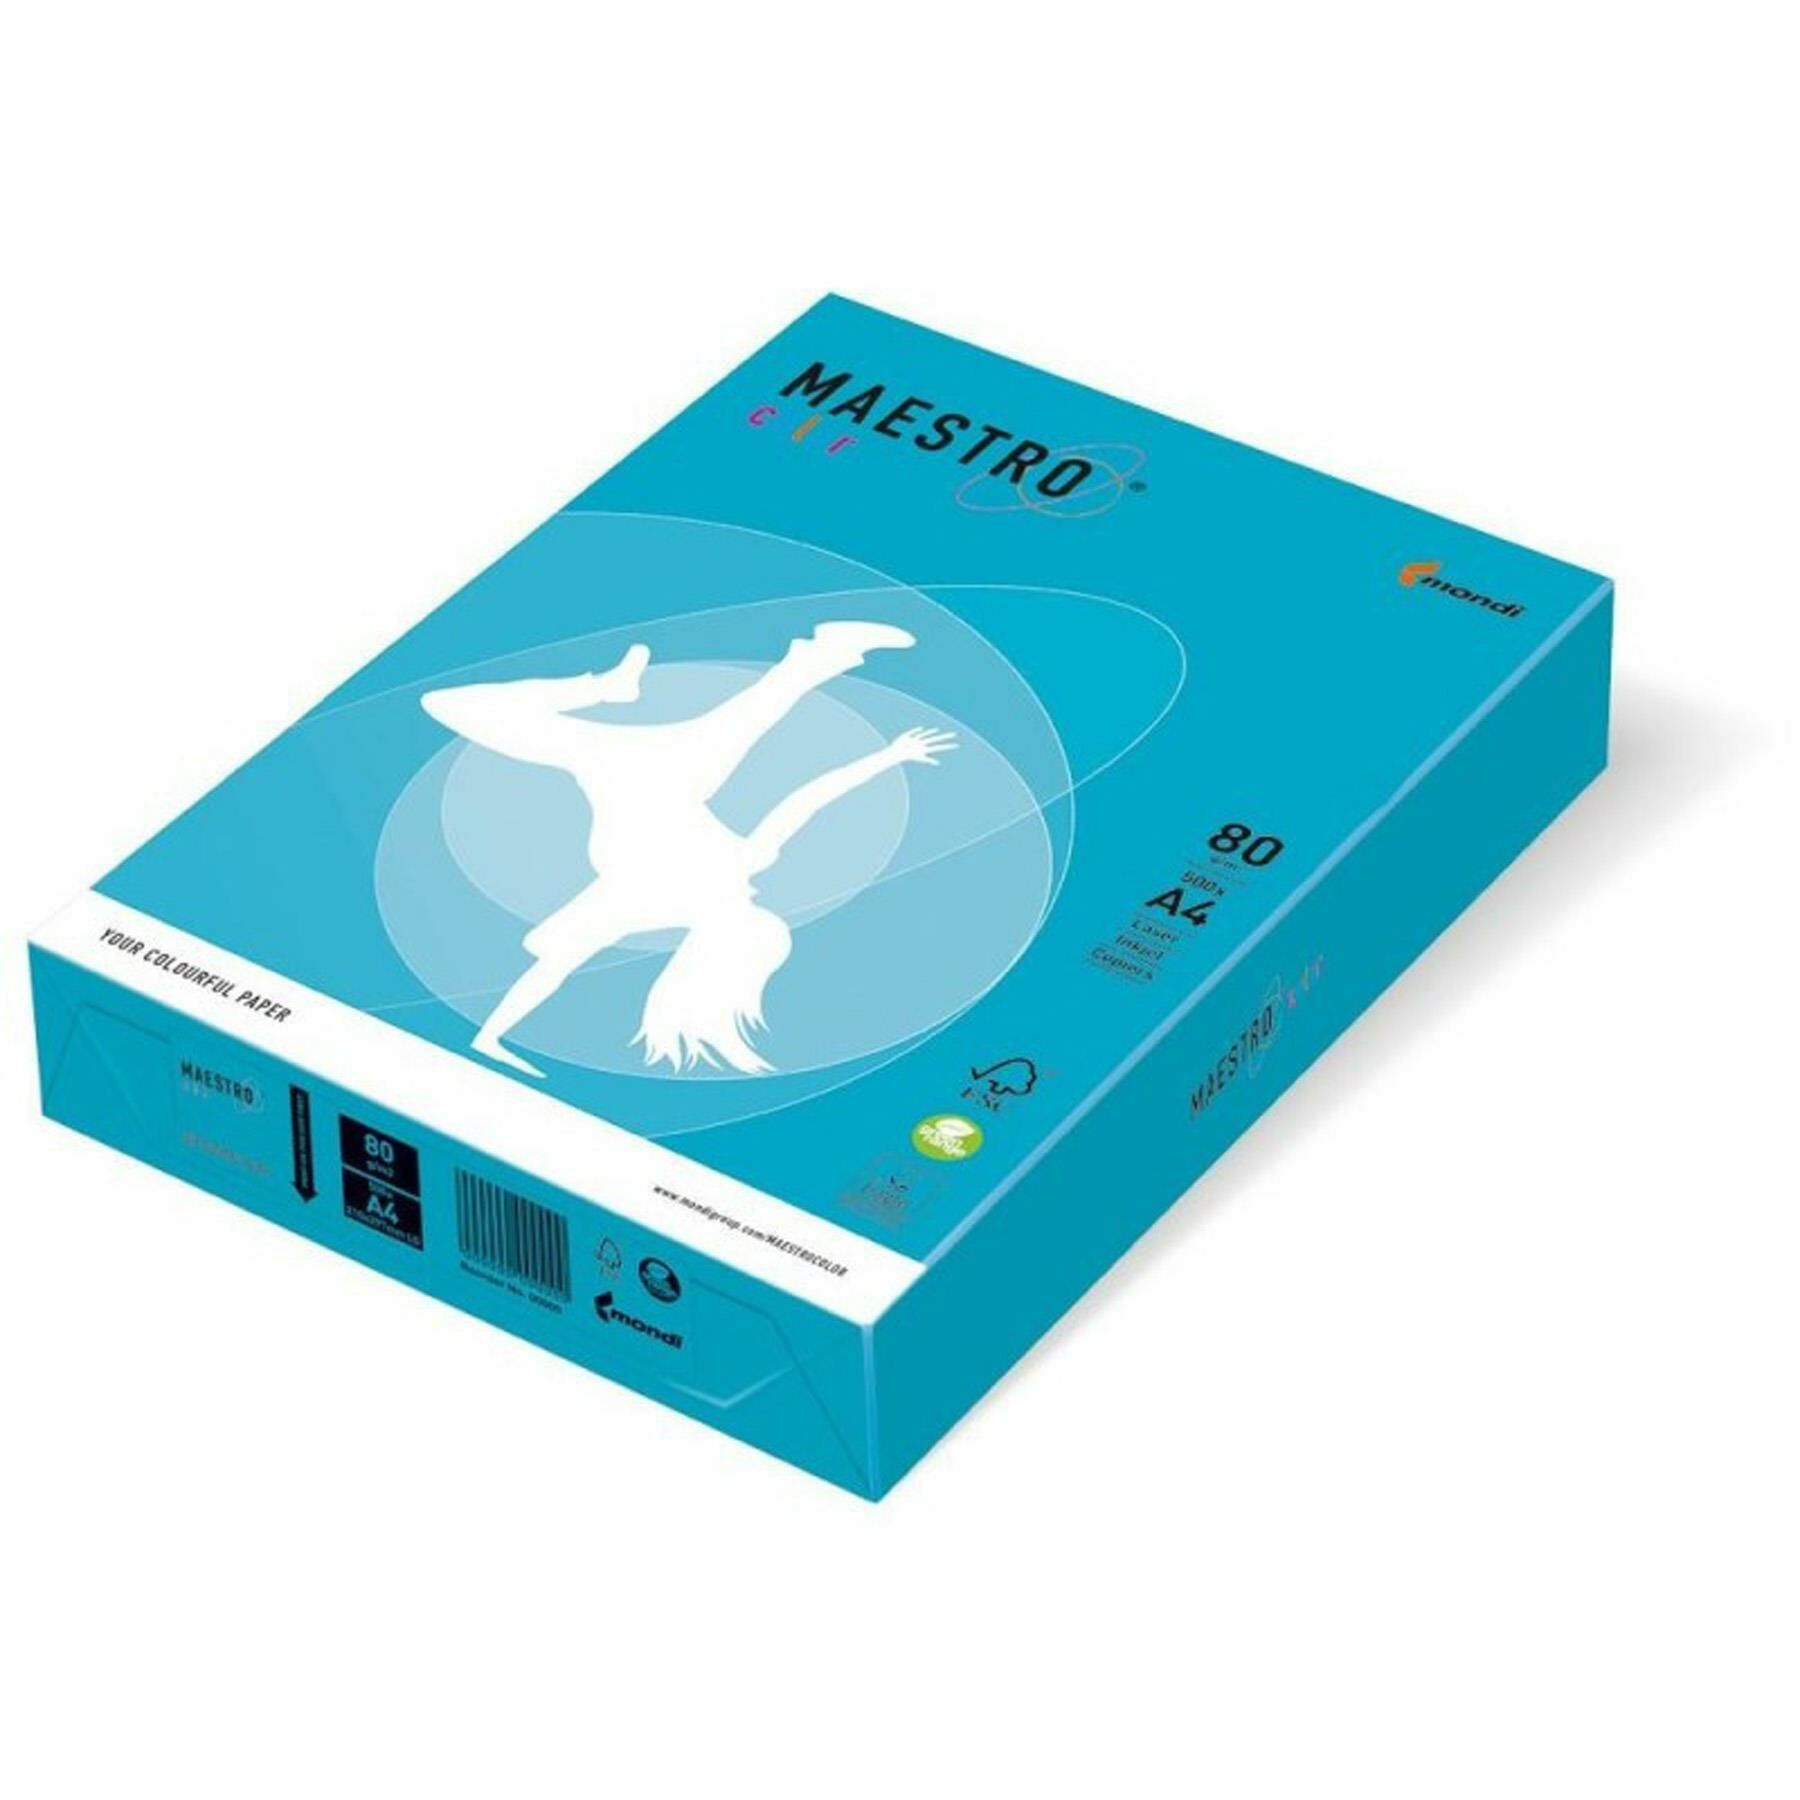 Mondi A4 Renkli Fotokopi Kağıdı Koyu Mavi 500lü Mnd-220 (1 paket)